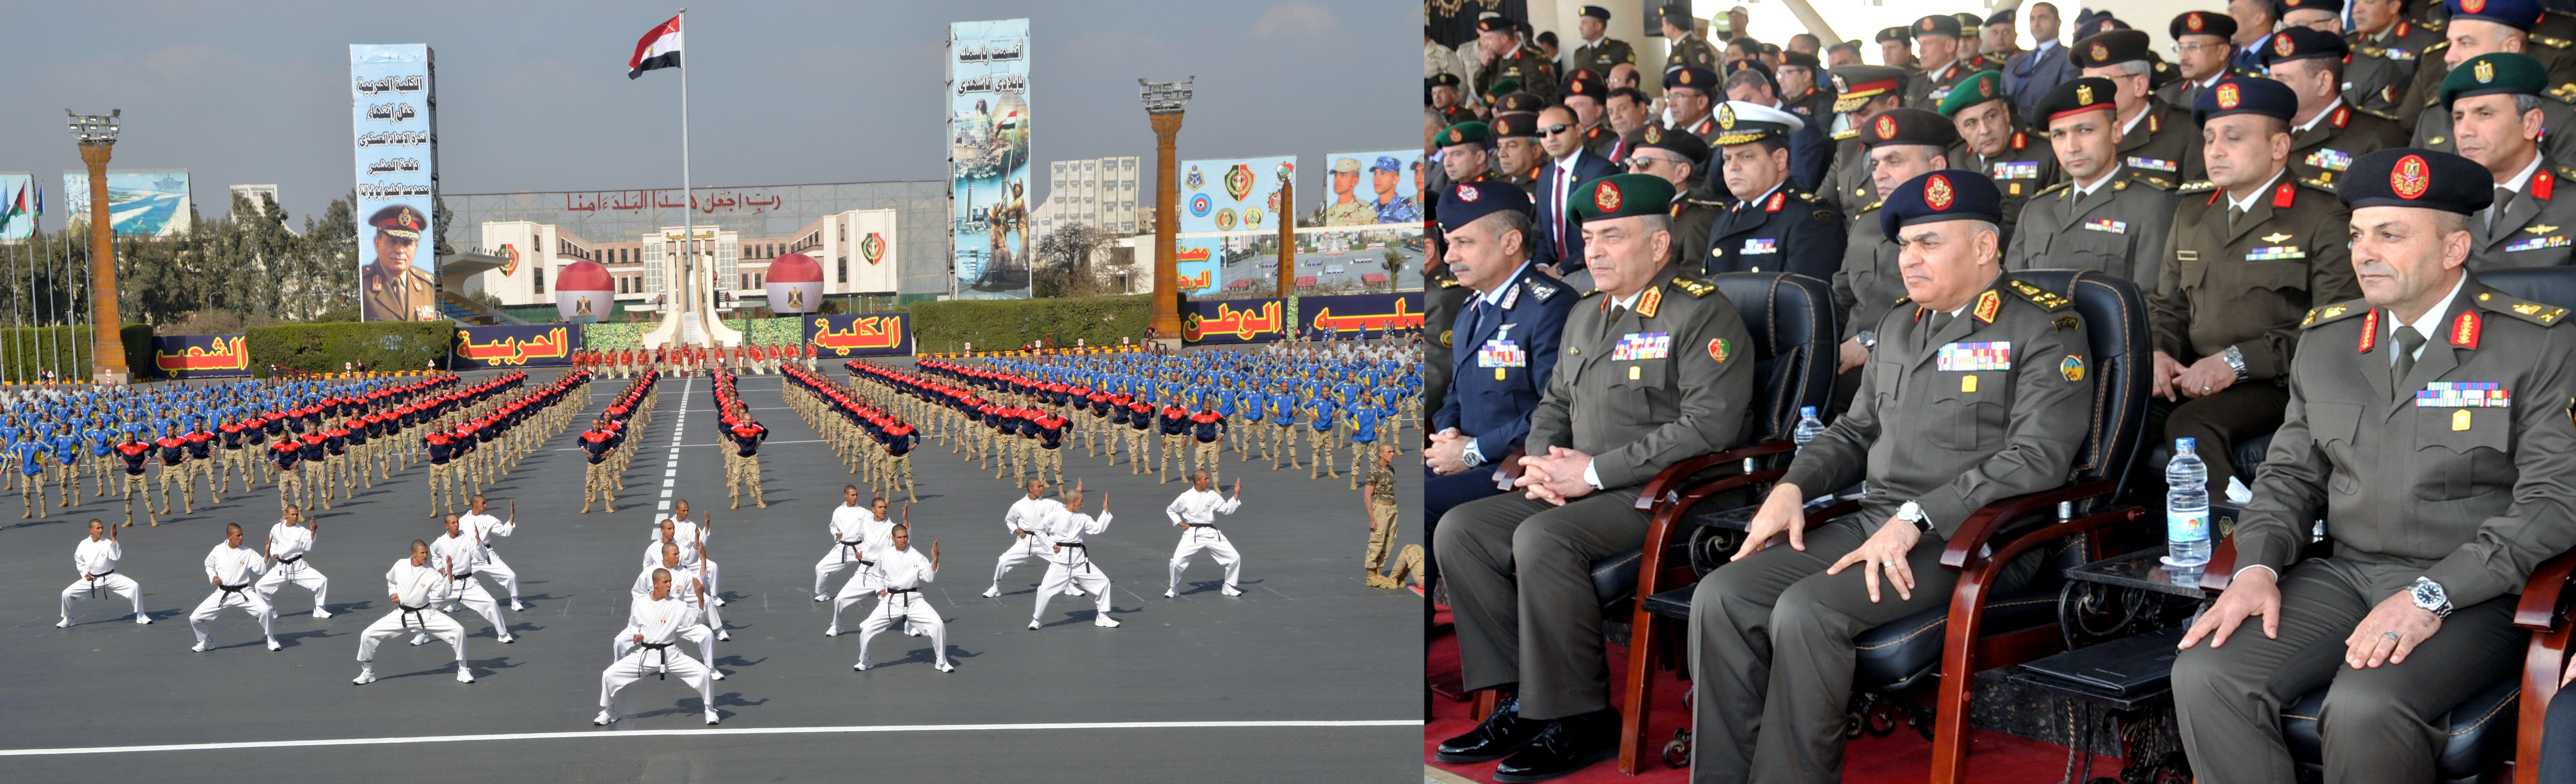 وزير الدفاع يشهد الاحتفال بانتهاء فترة الإعداد لطلاب الكليات العسكرية (2)